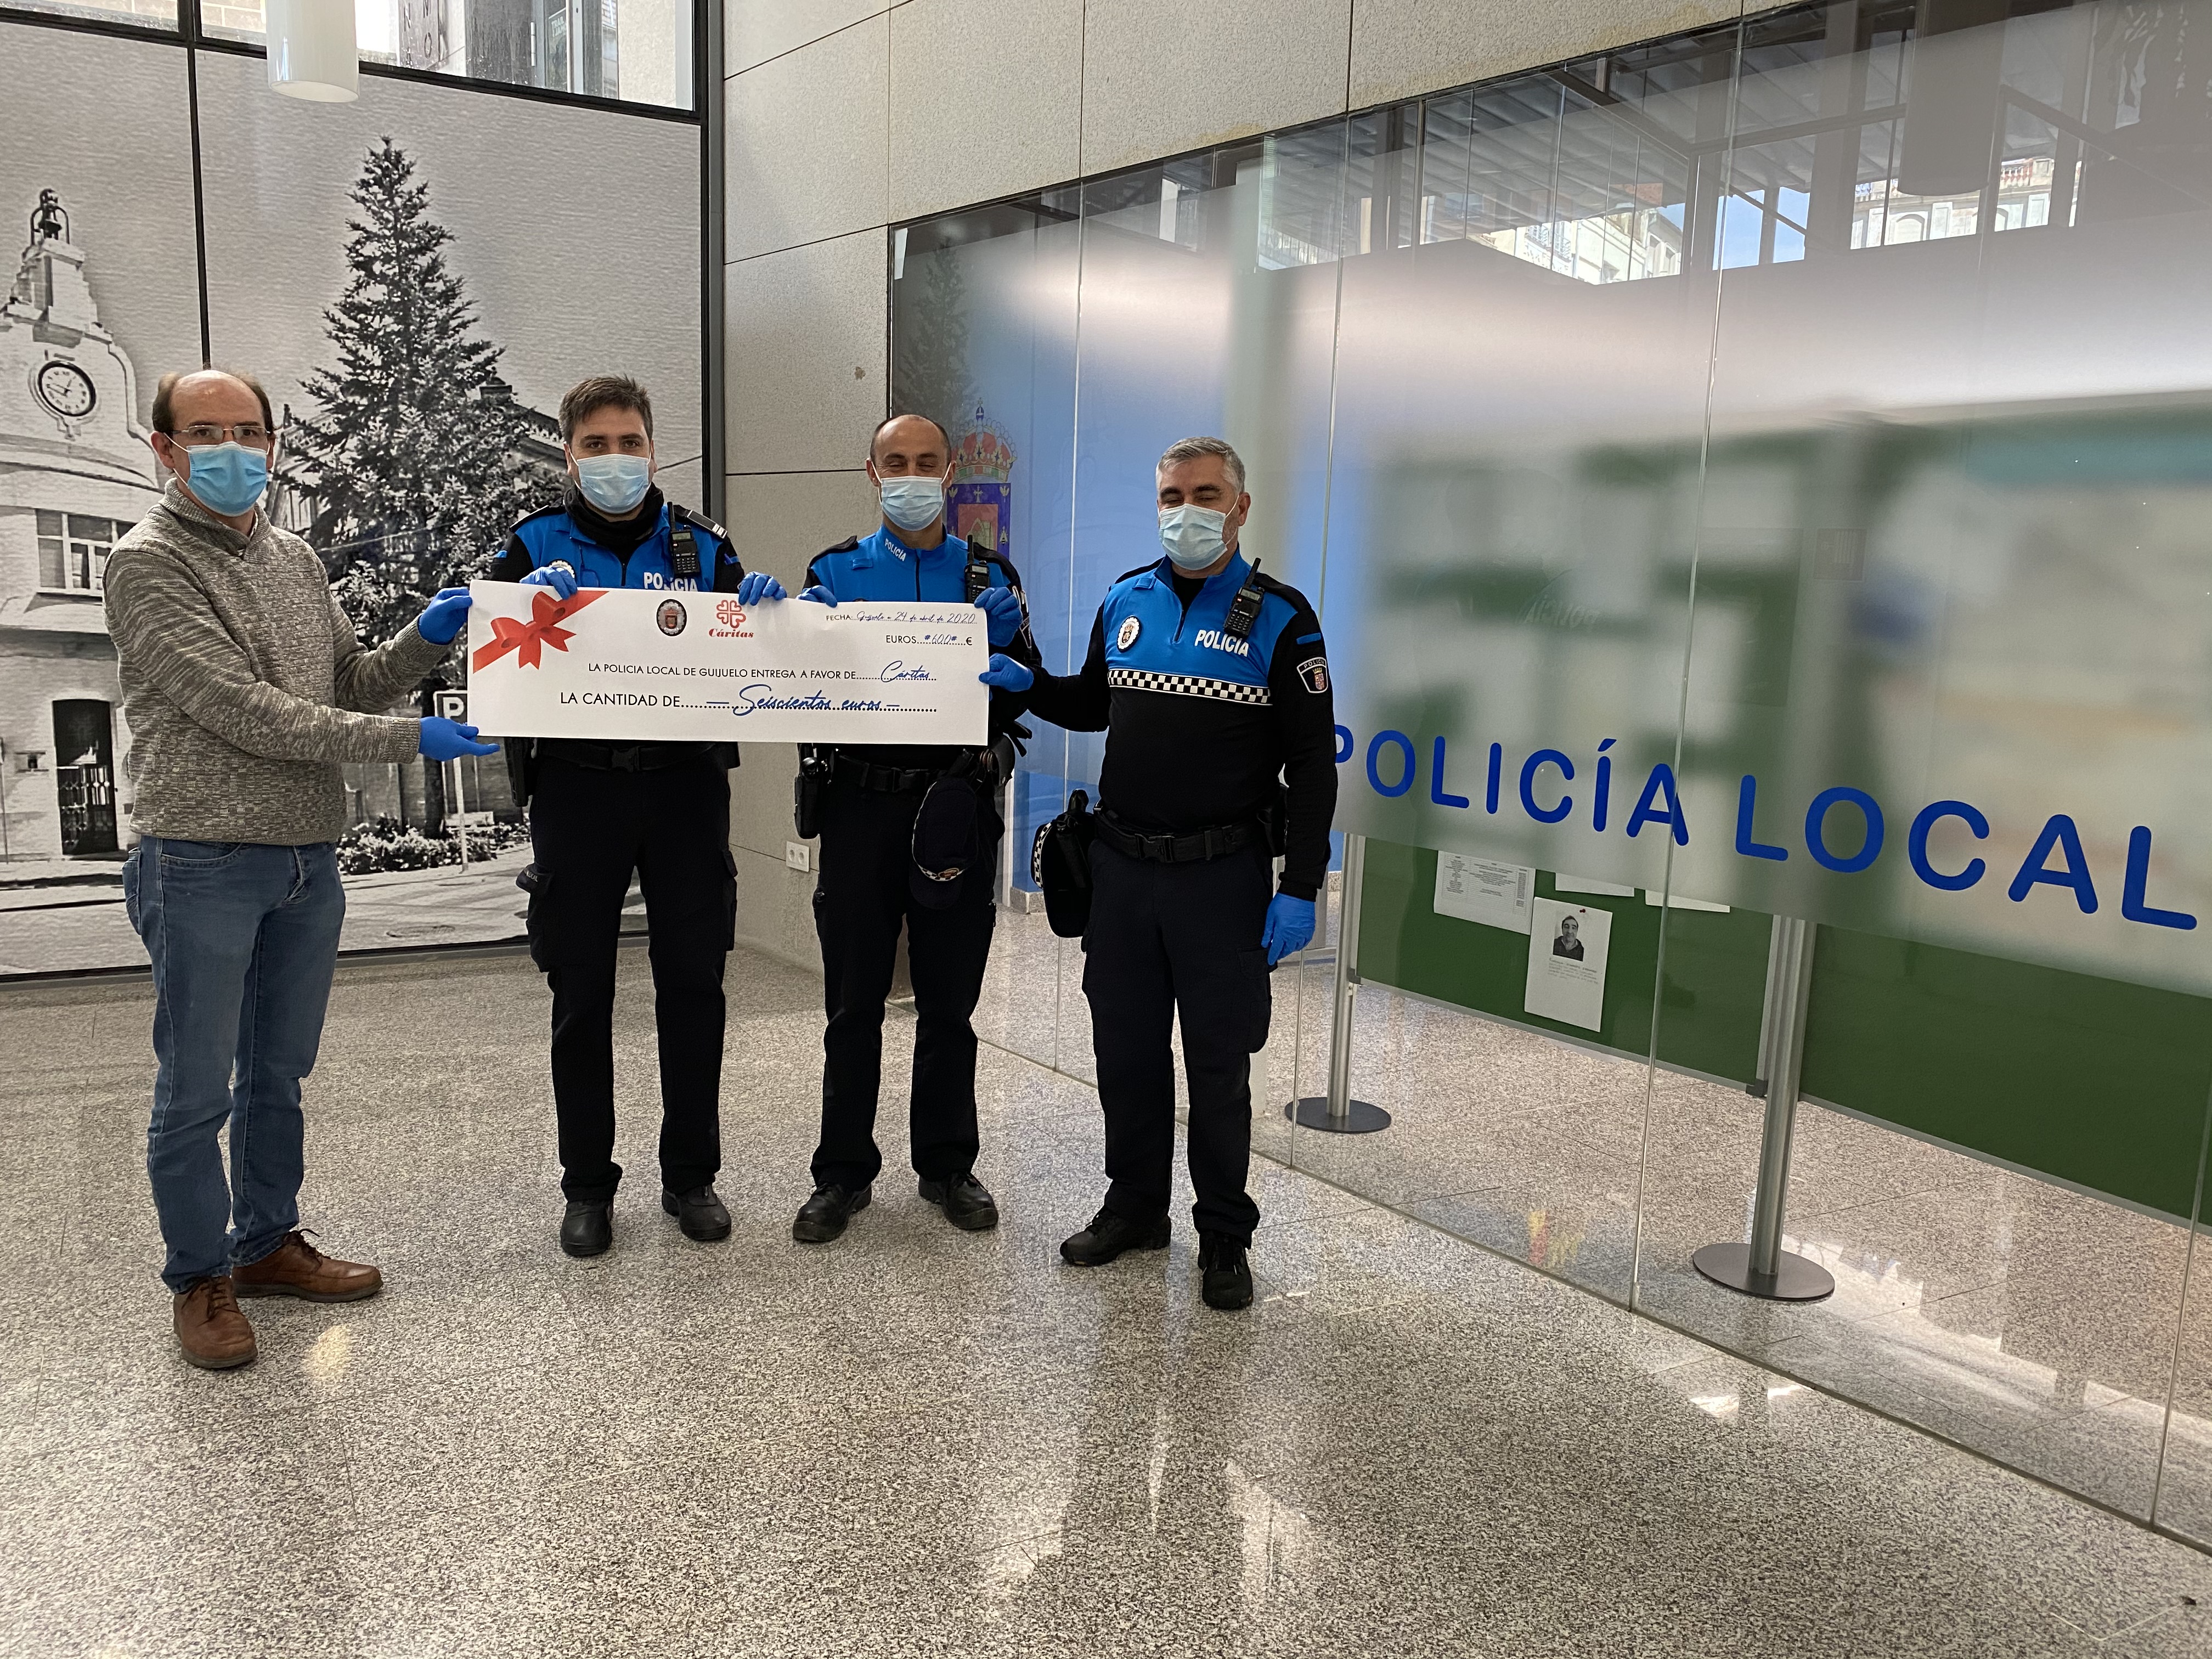 La Policía Local de Guijuelo dona 600 euros a Cáritas de Salamanca